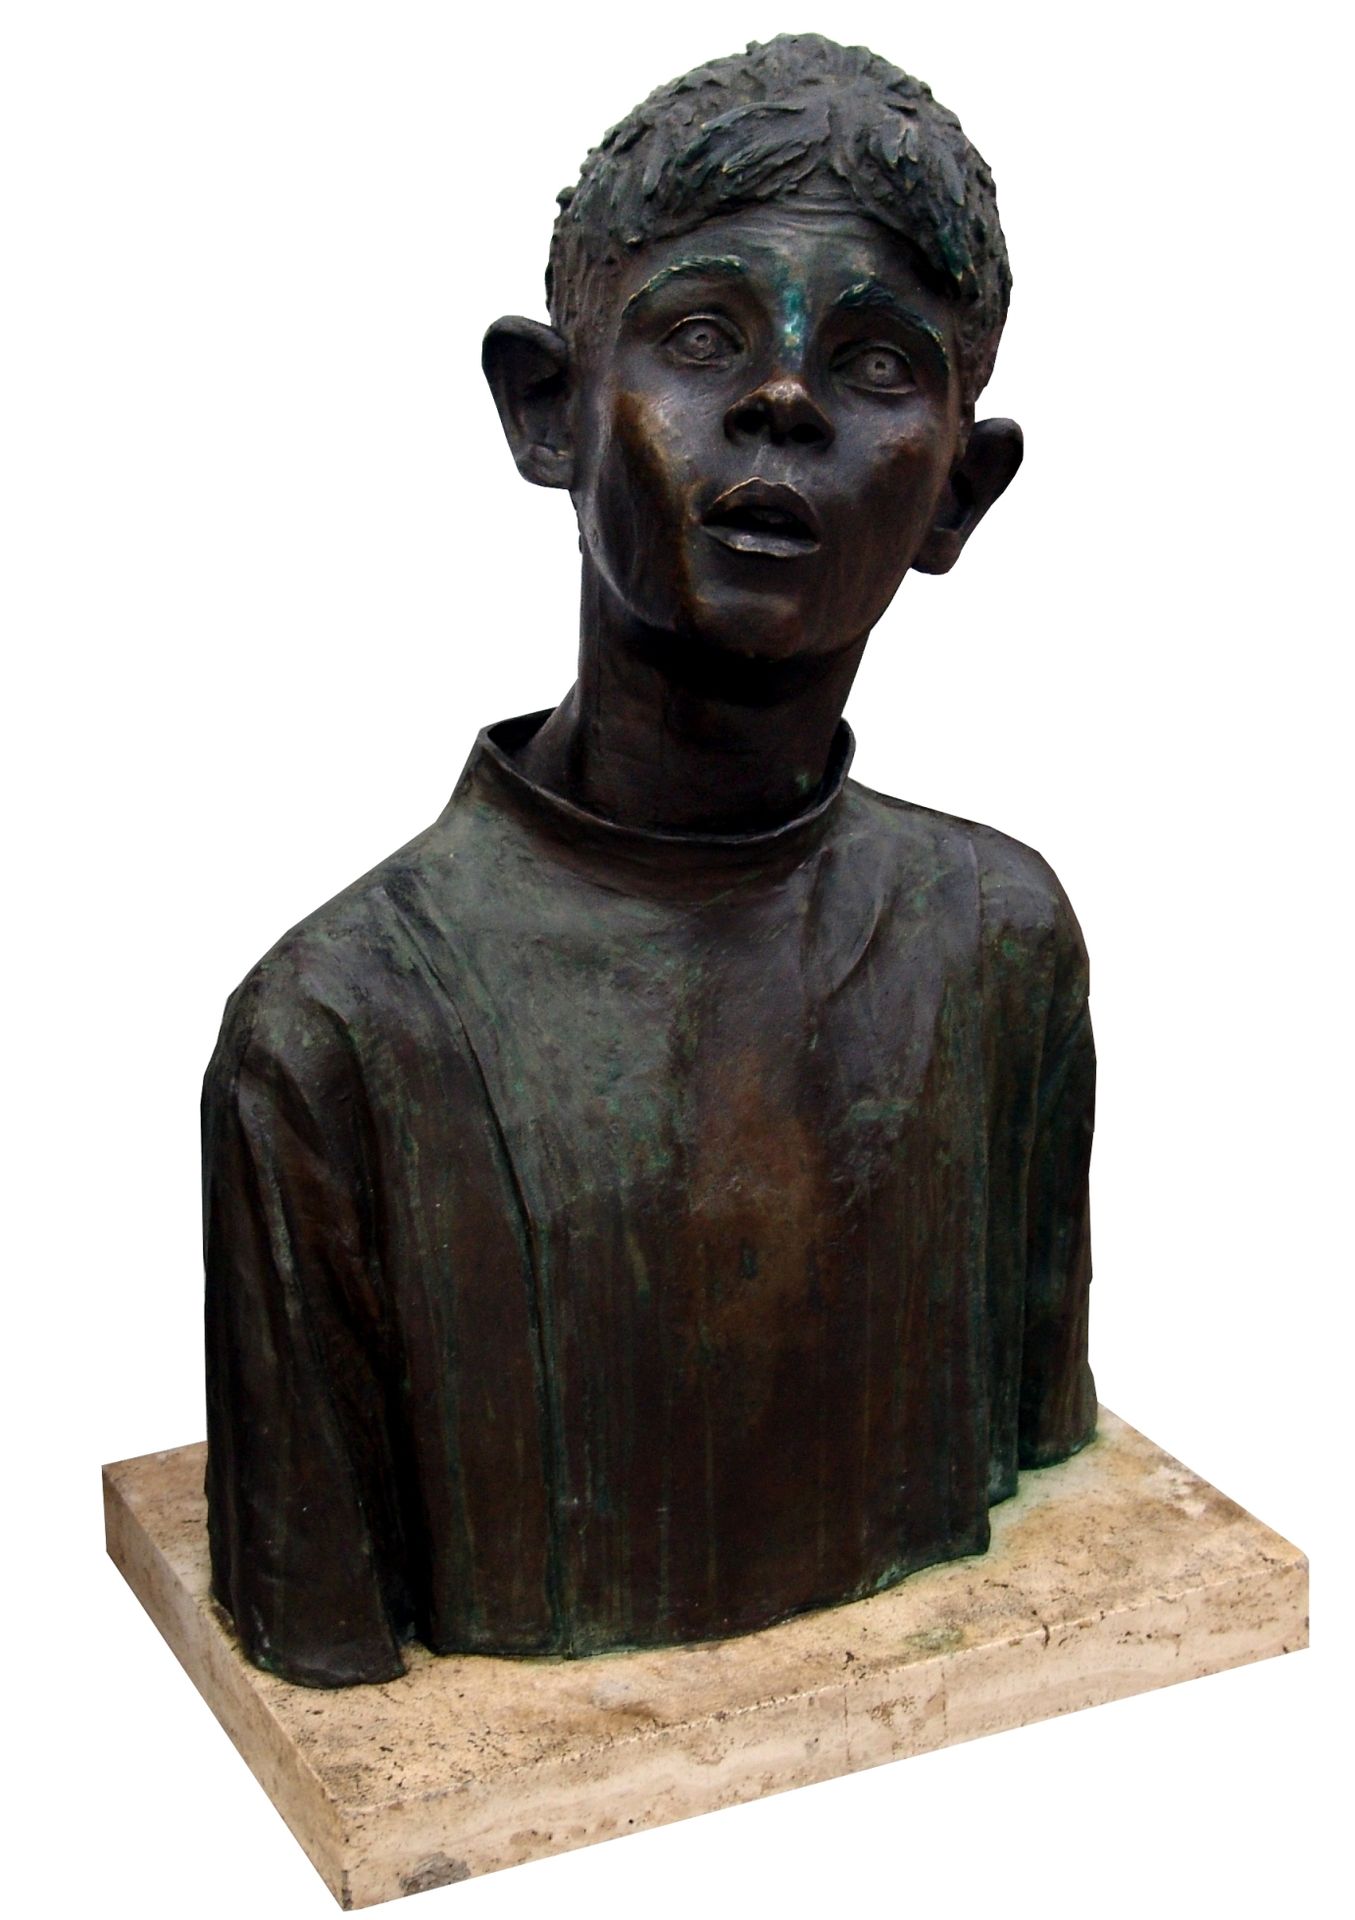 ALFIO CASTELLI Ritratto di fanciullo, c. 1940, scultura in bronzo, 58x41x20 cm

&hellip;